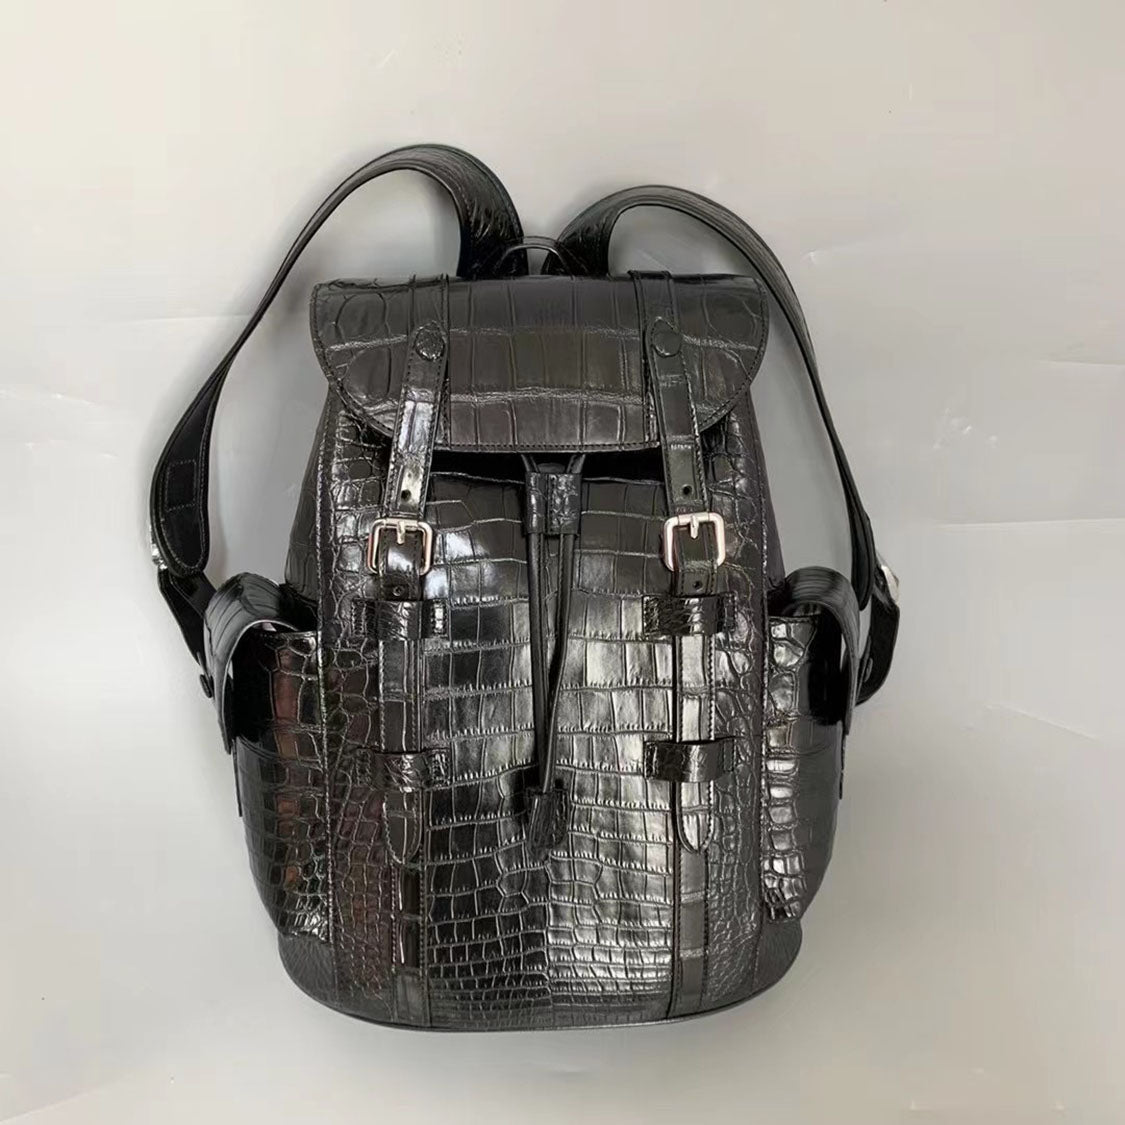 Himalaya Alligator Skin Leather Backpack Shoulder Bag Travel Bag – Crocodile  Viet